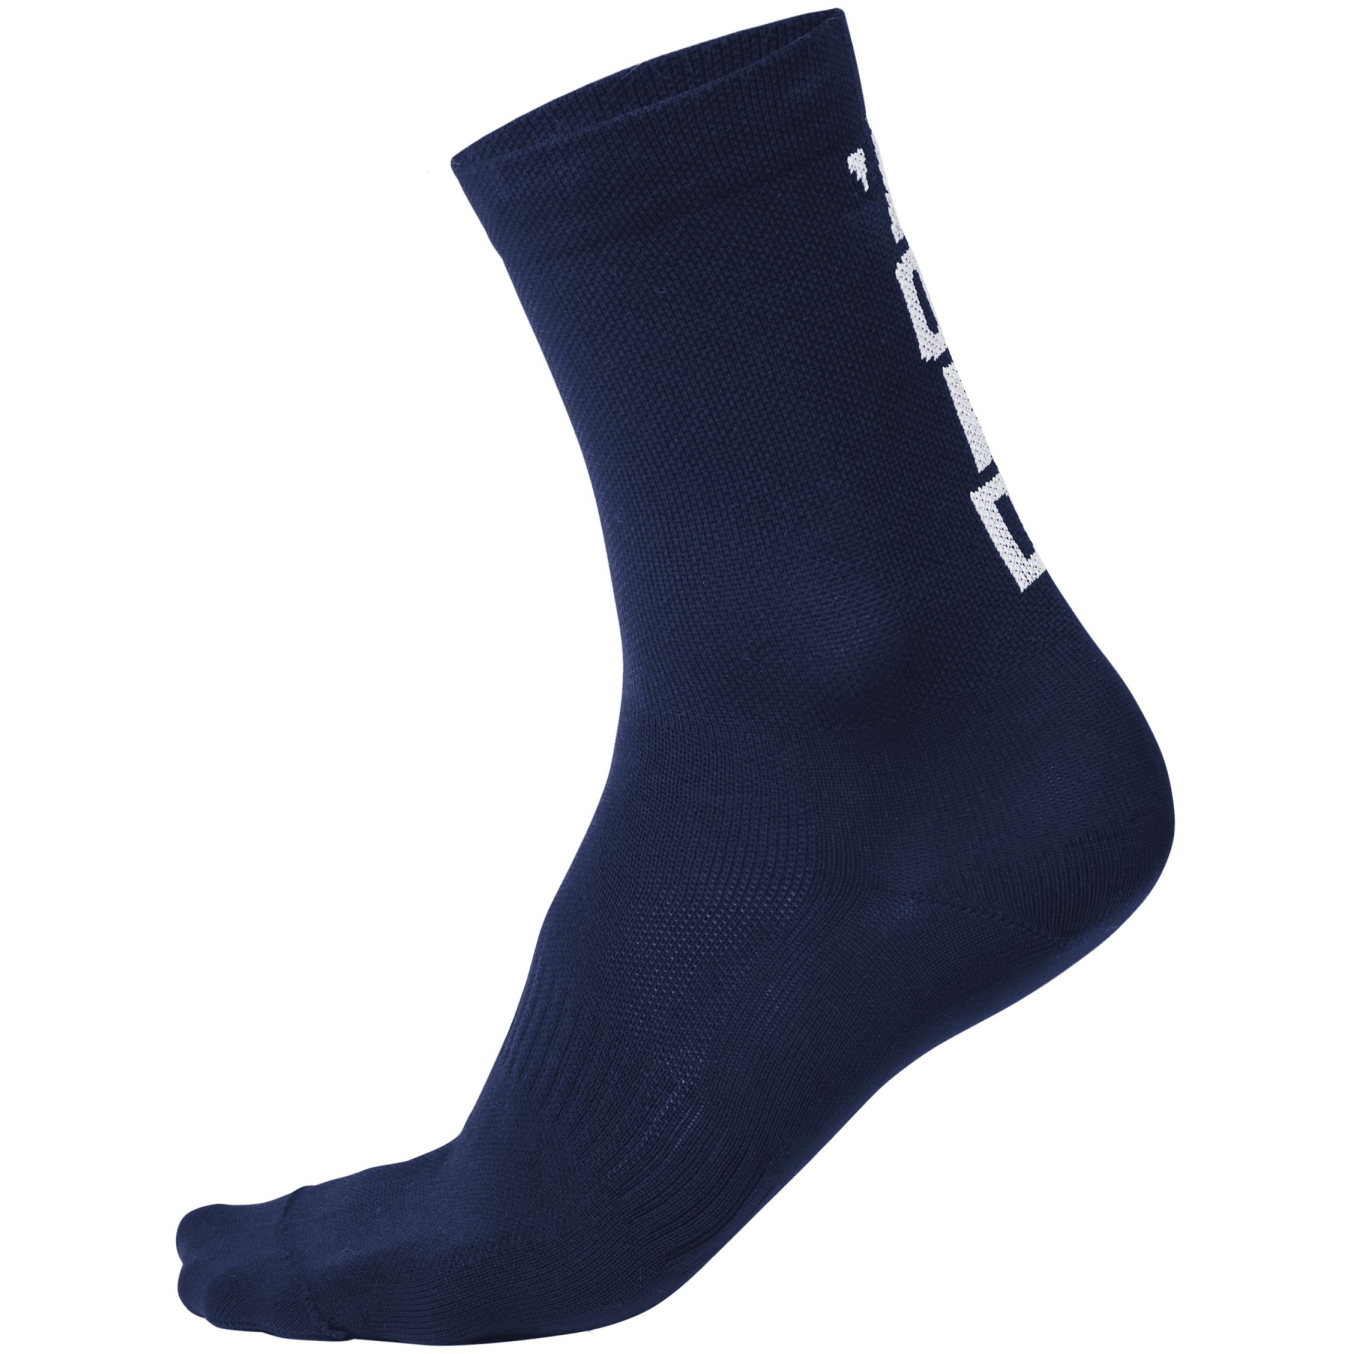 Produktbild von VOID Cycling Performance Socken 14 - Dark Blue